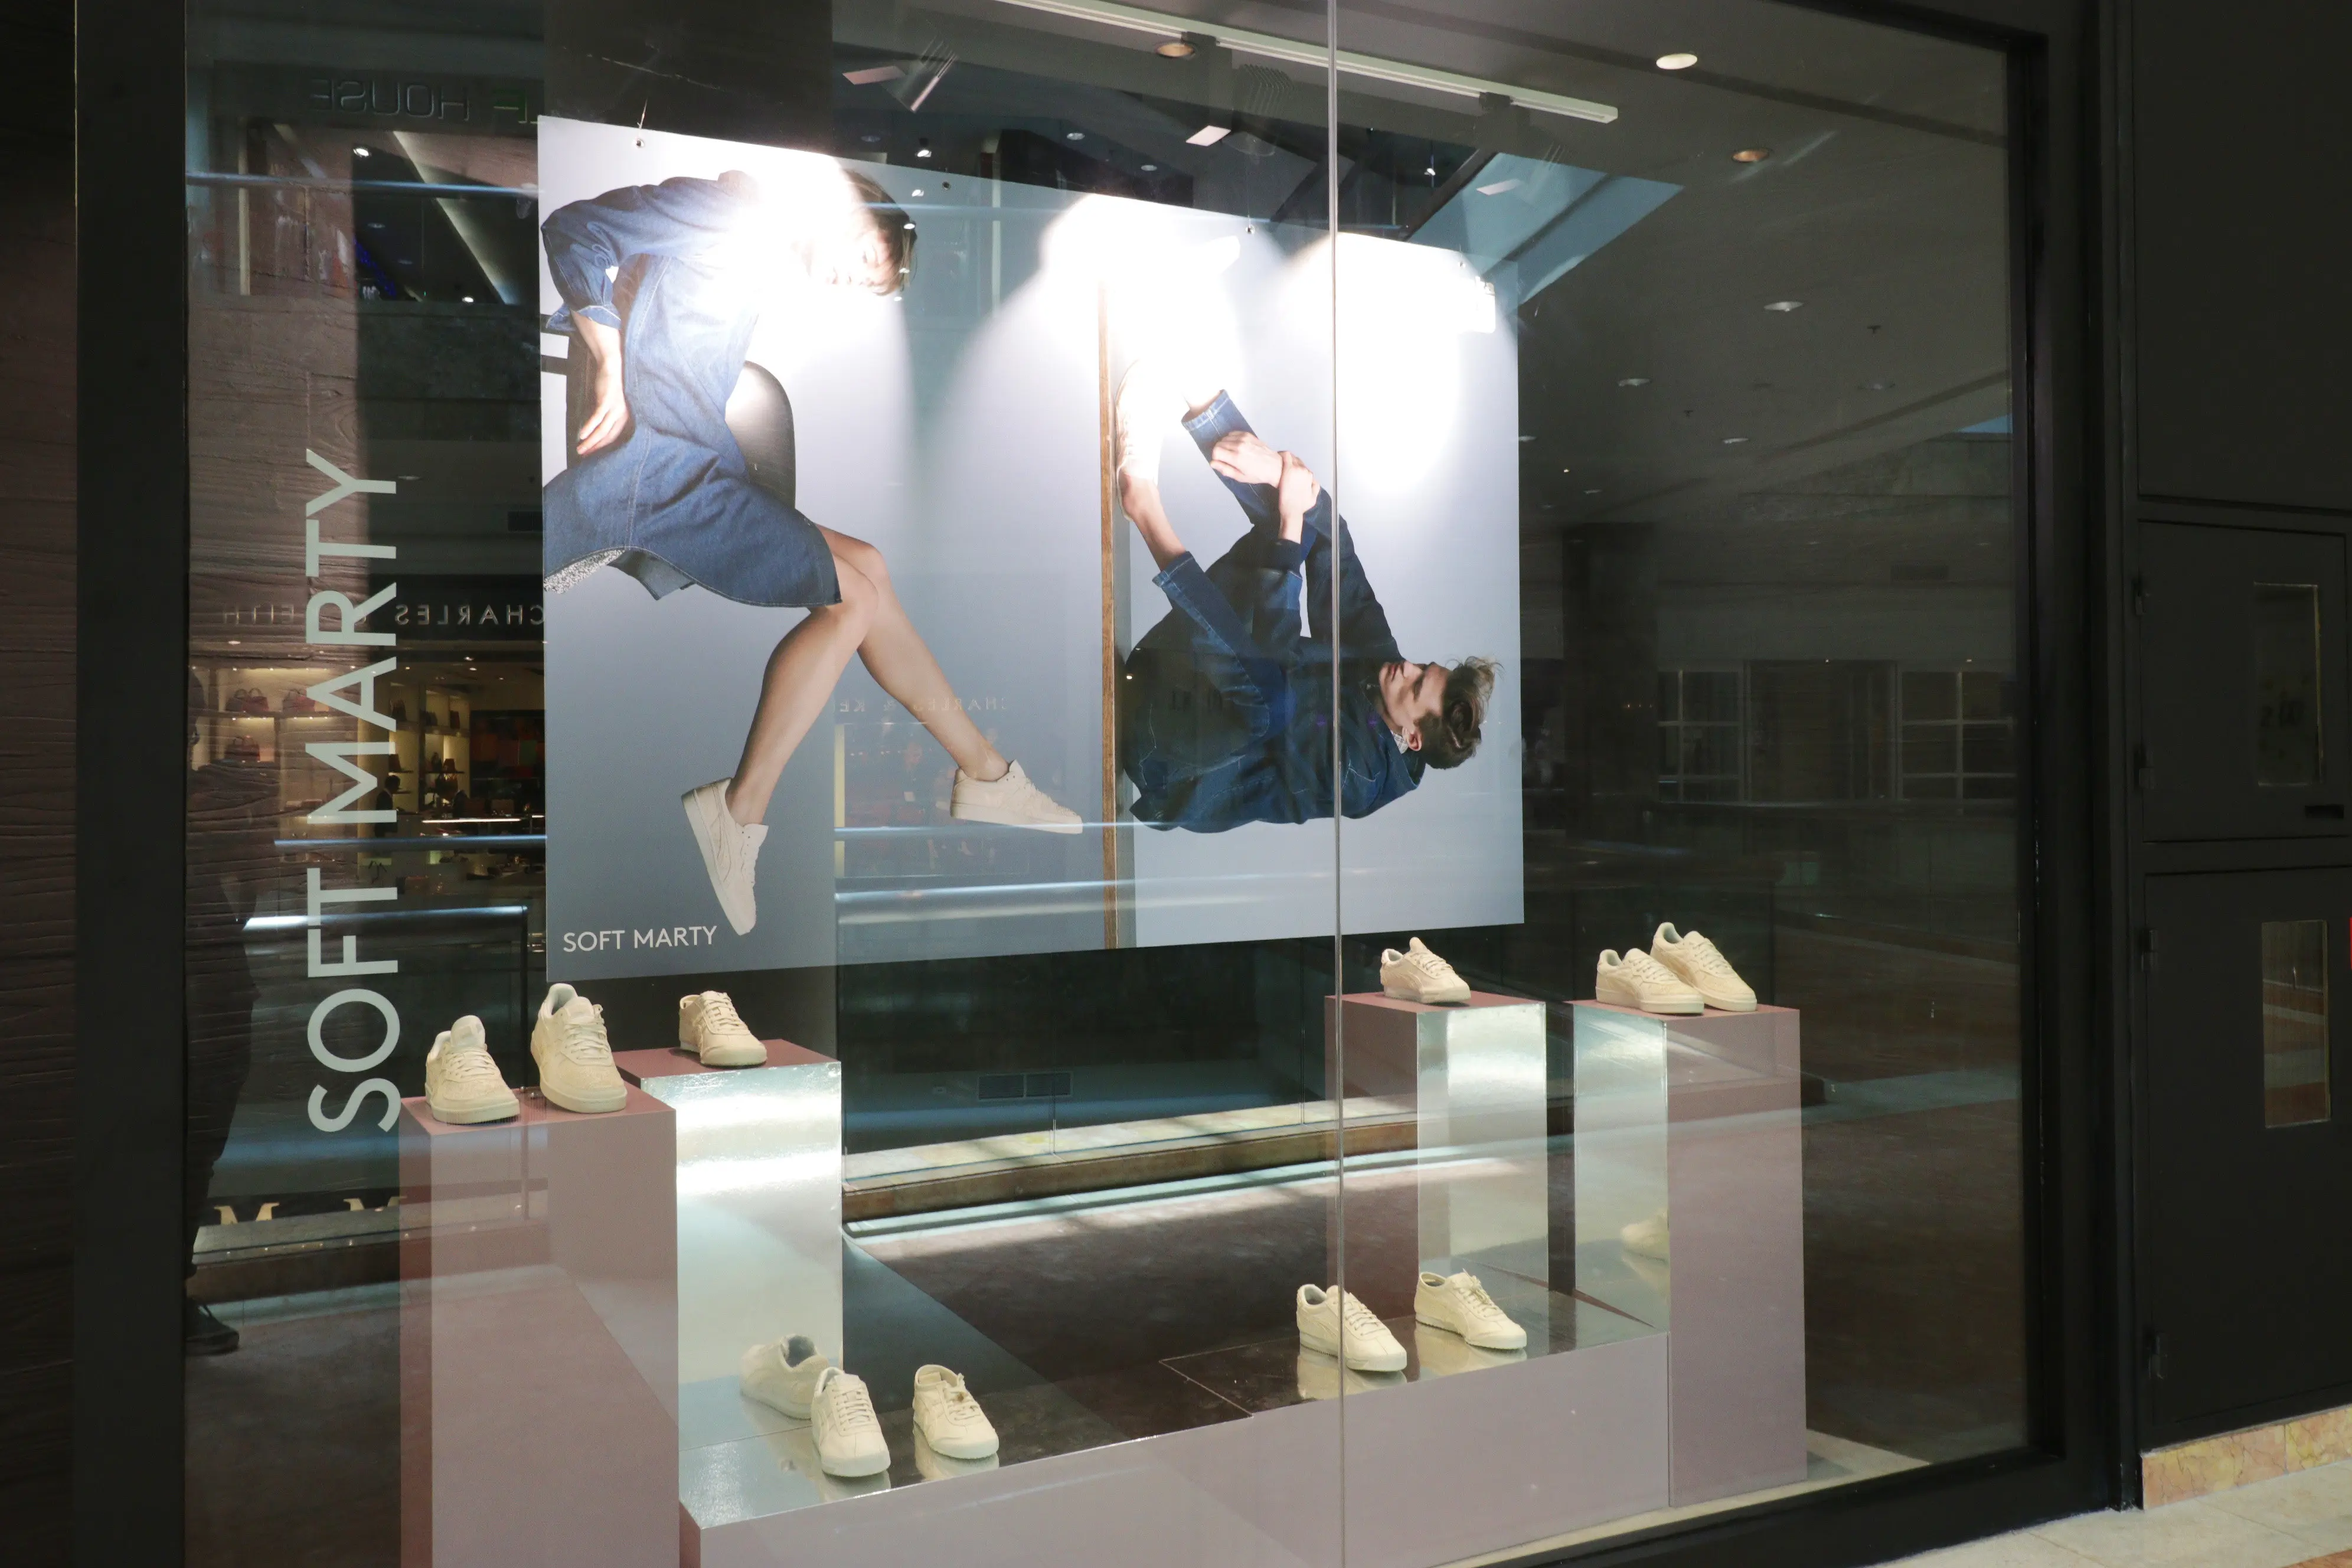 Pembukaan toko sepatu pertama, Onitsuka Tiger di Indonesia.